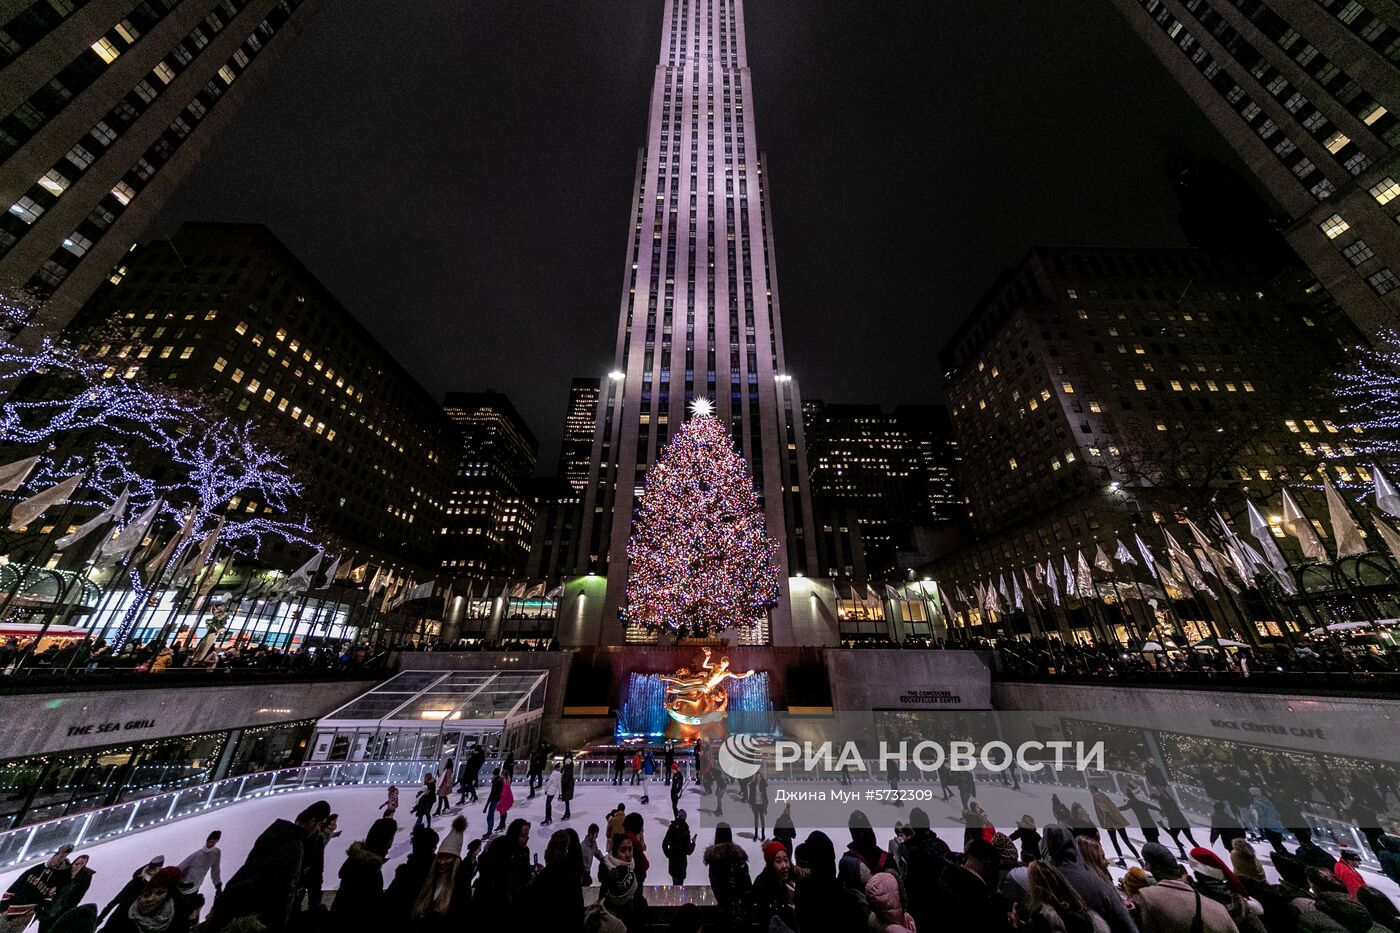 Рождественская ель в Рокфеллеровском центре в Нью-Йорке